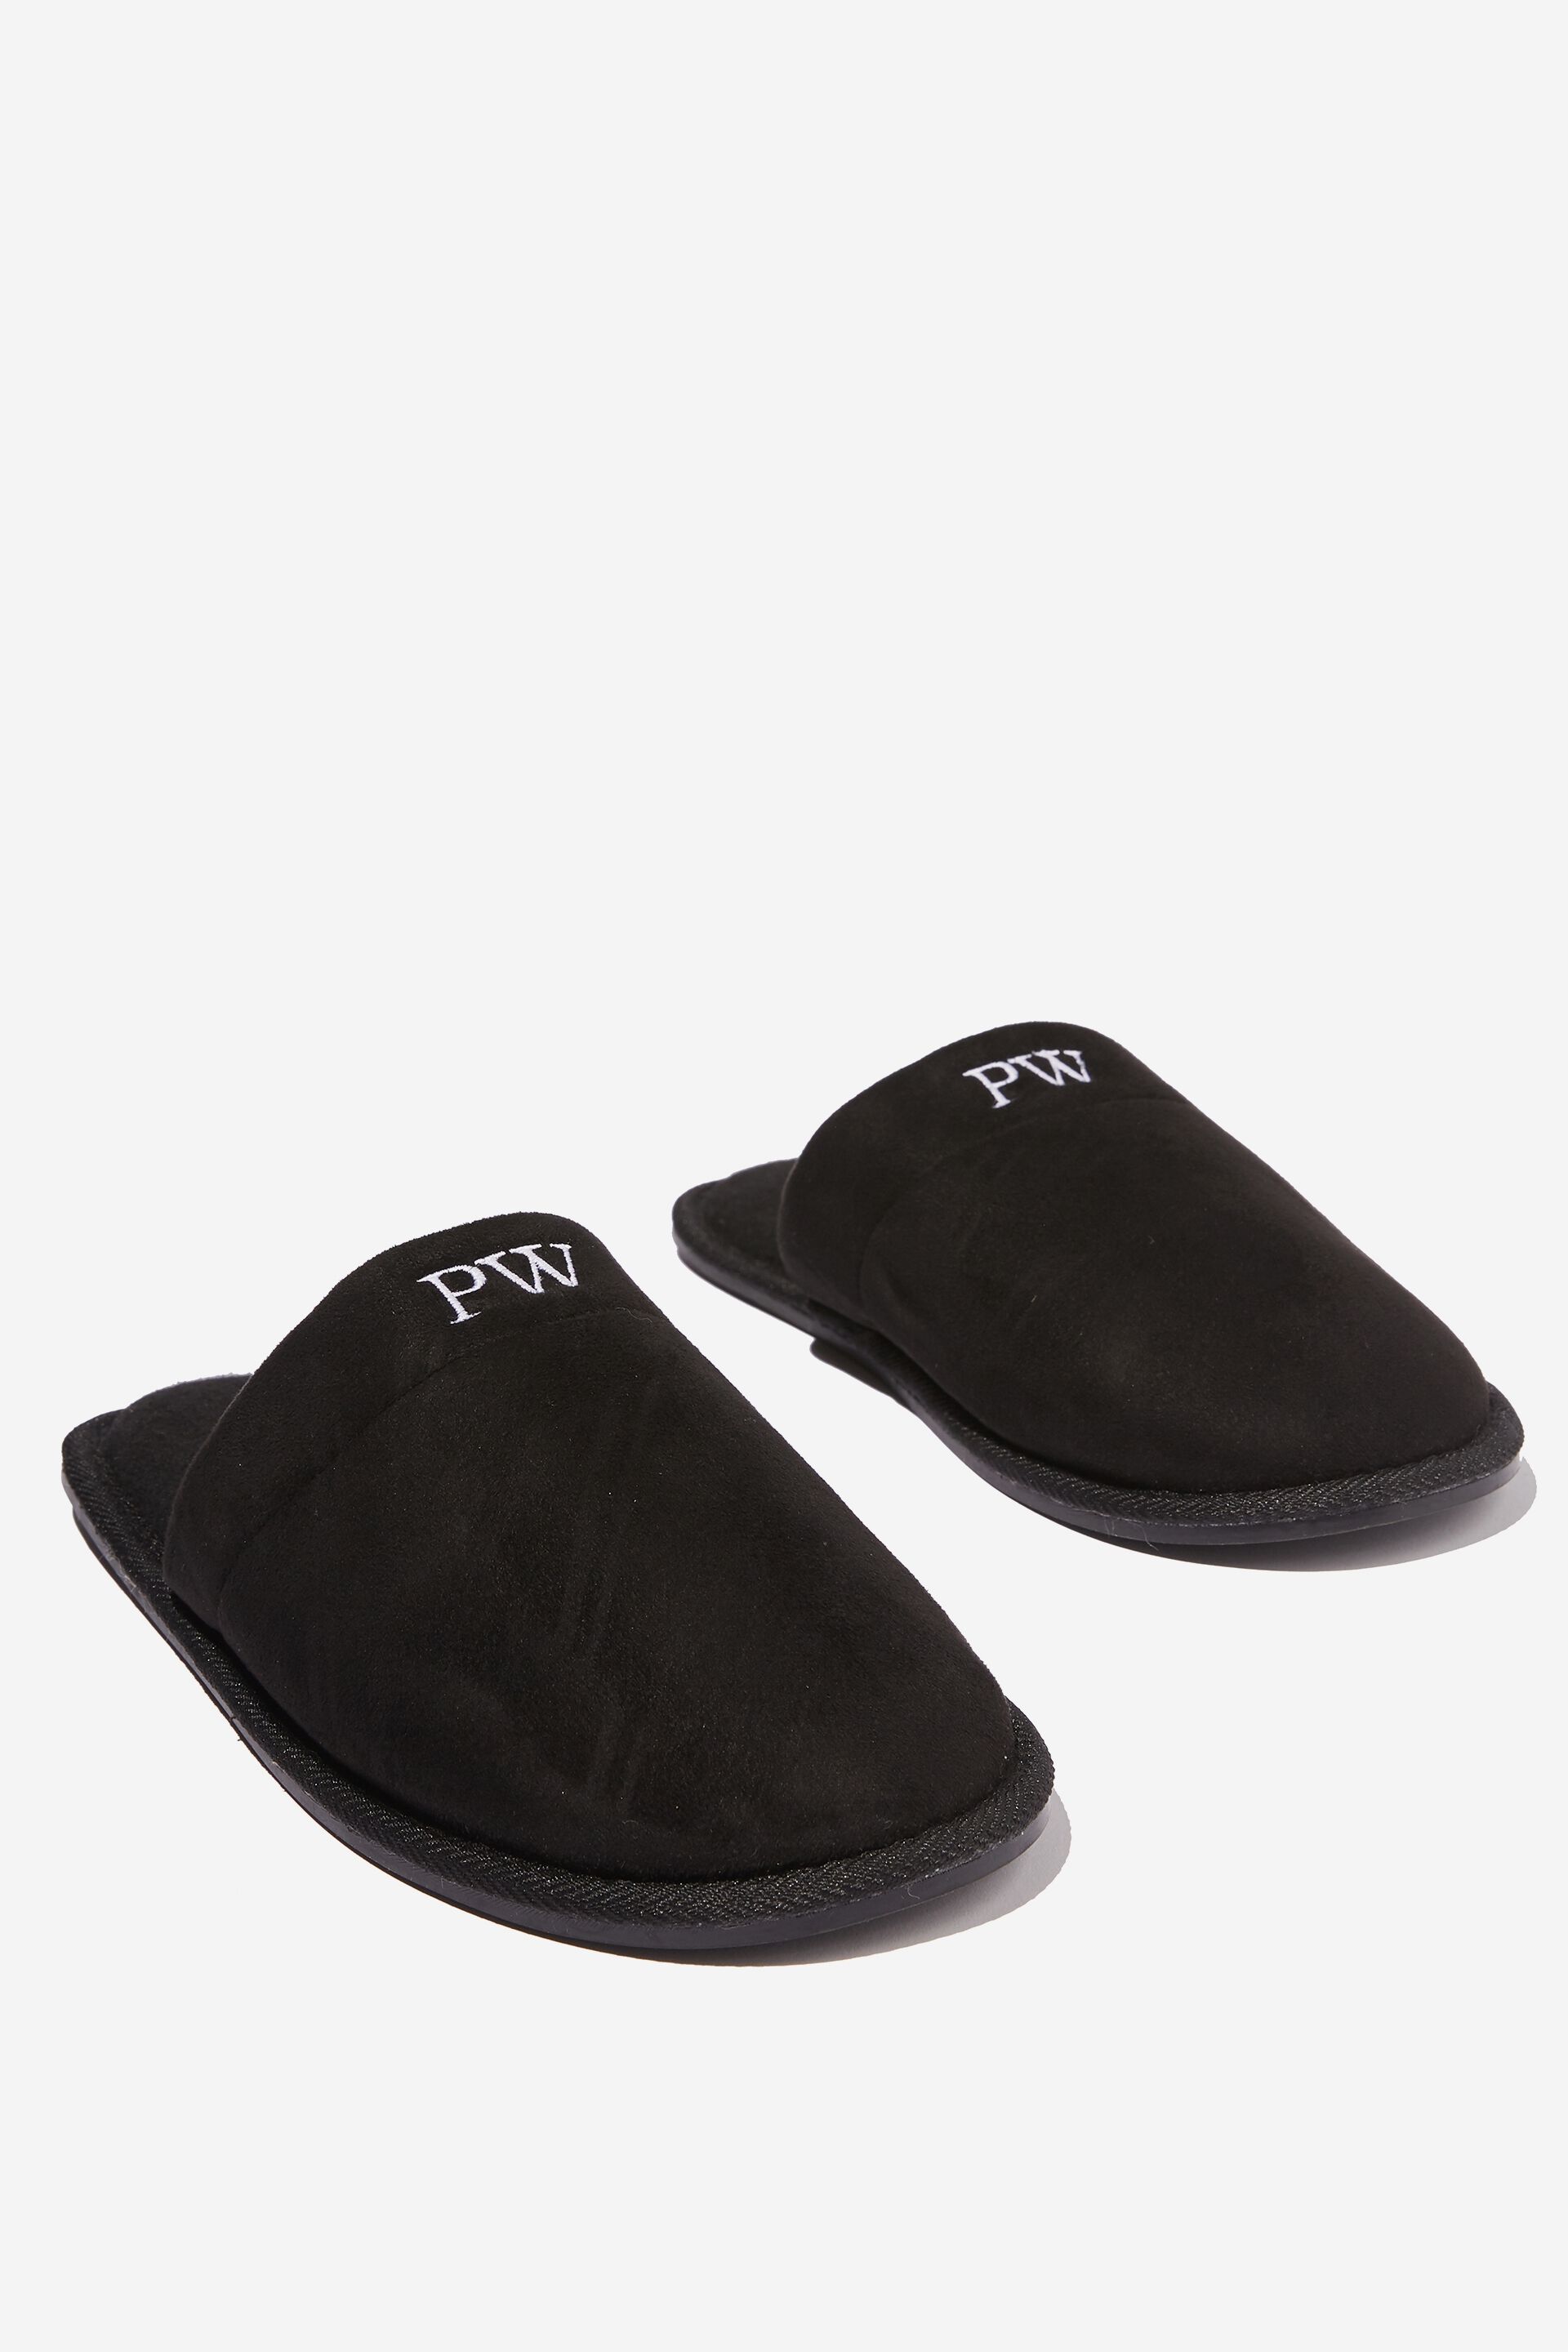 personalised slippers men